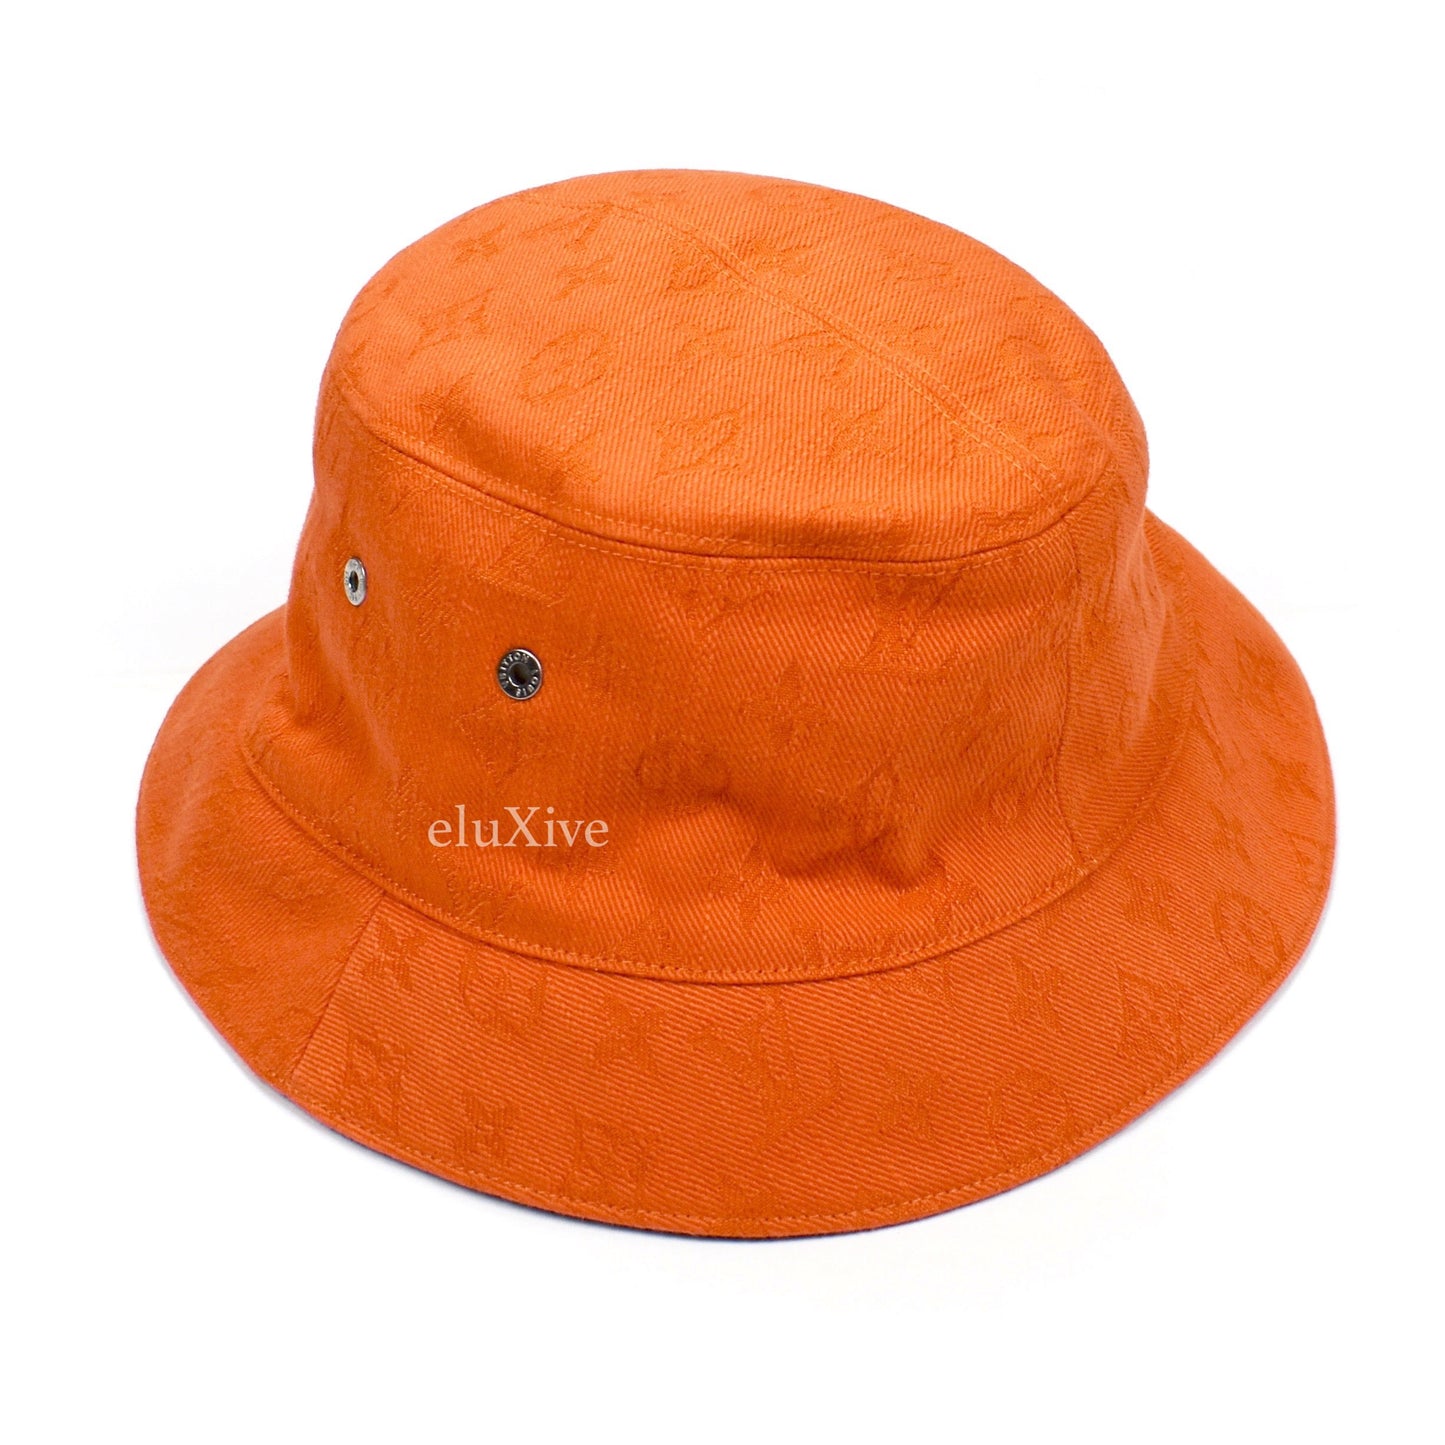 Louis Vuitton Denim Bucket Hat - Rare